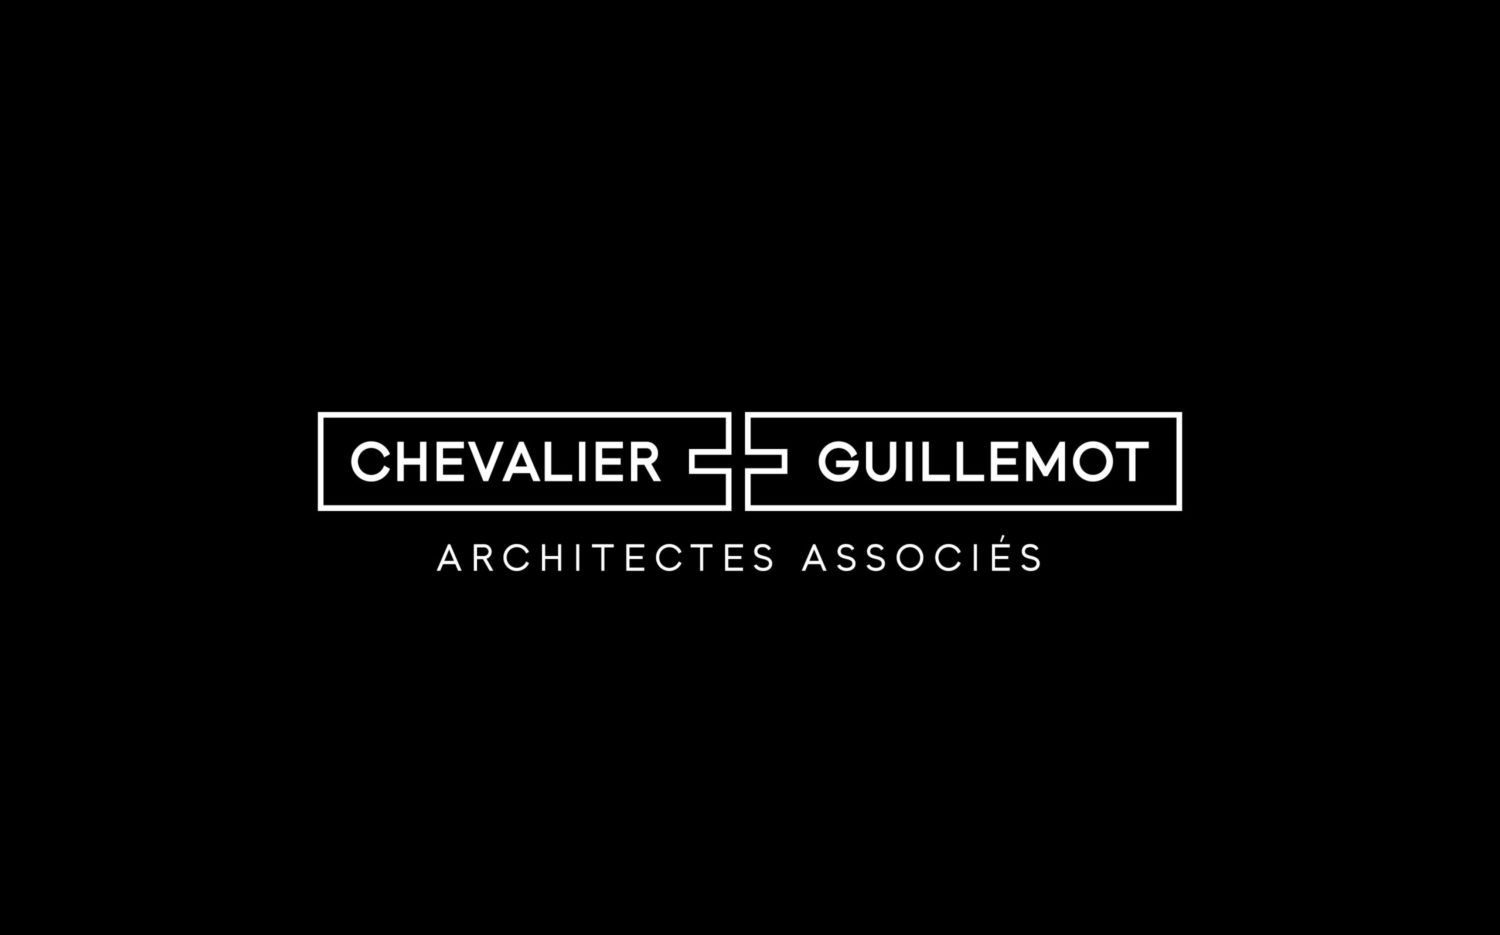 Chevalier+Guillemot architectes associés - Des Cheval